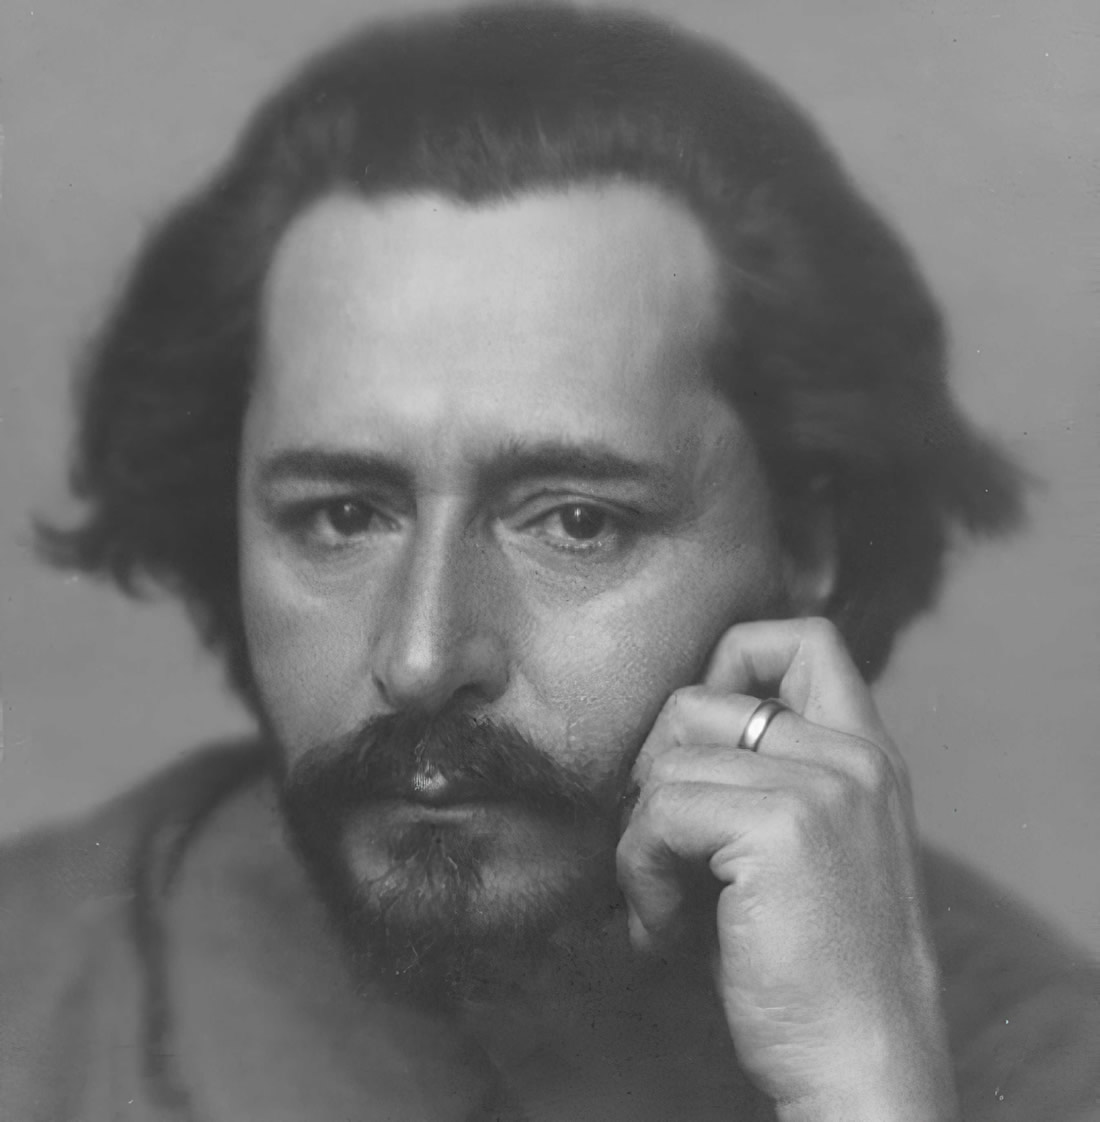 Писатель Леонид Андреев